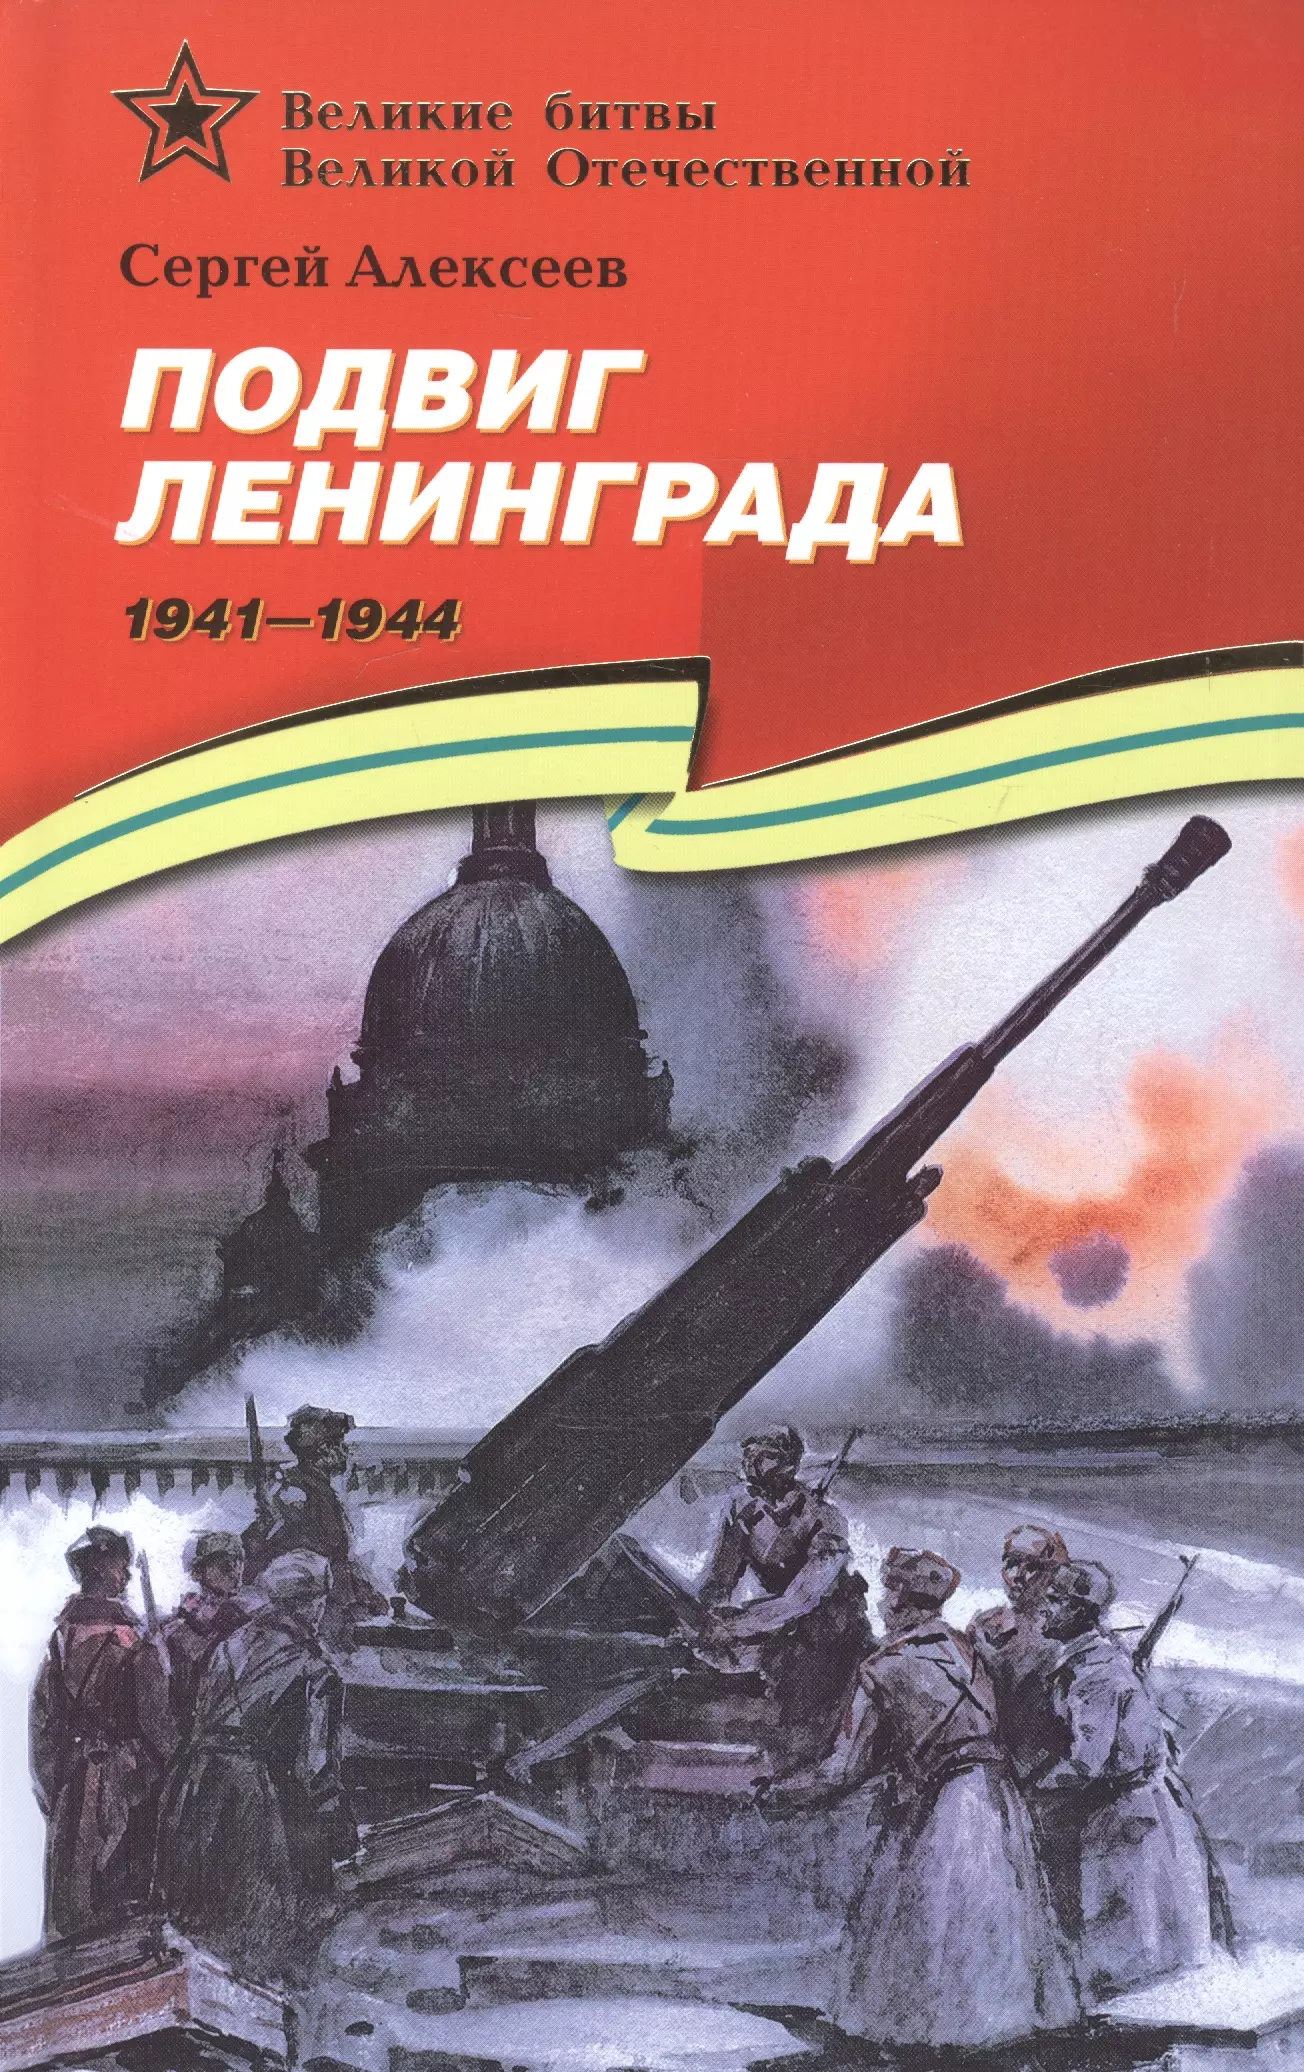 Подвиг Ленинграда (1941–1944): рассказы для детей соловьев б 1941 год трагедии ошибки подвиг